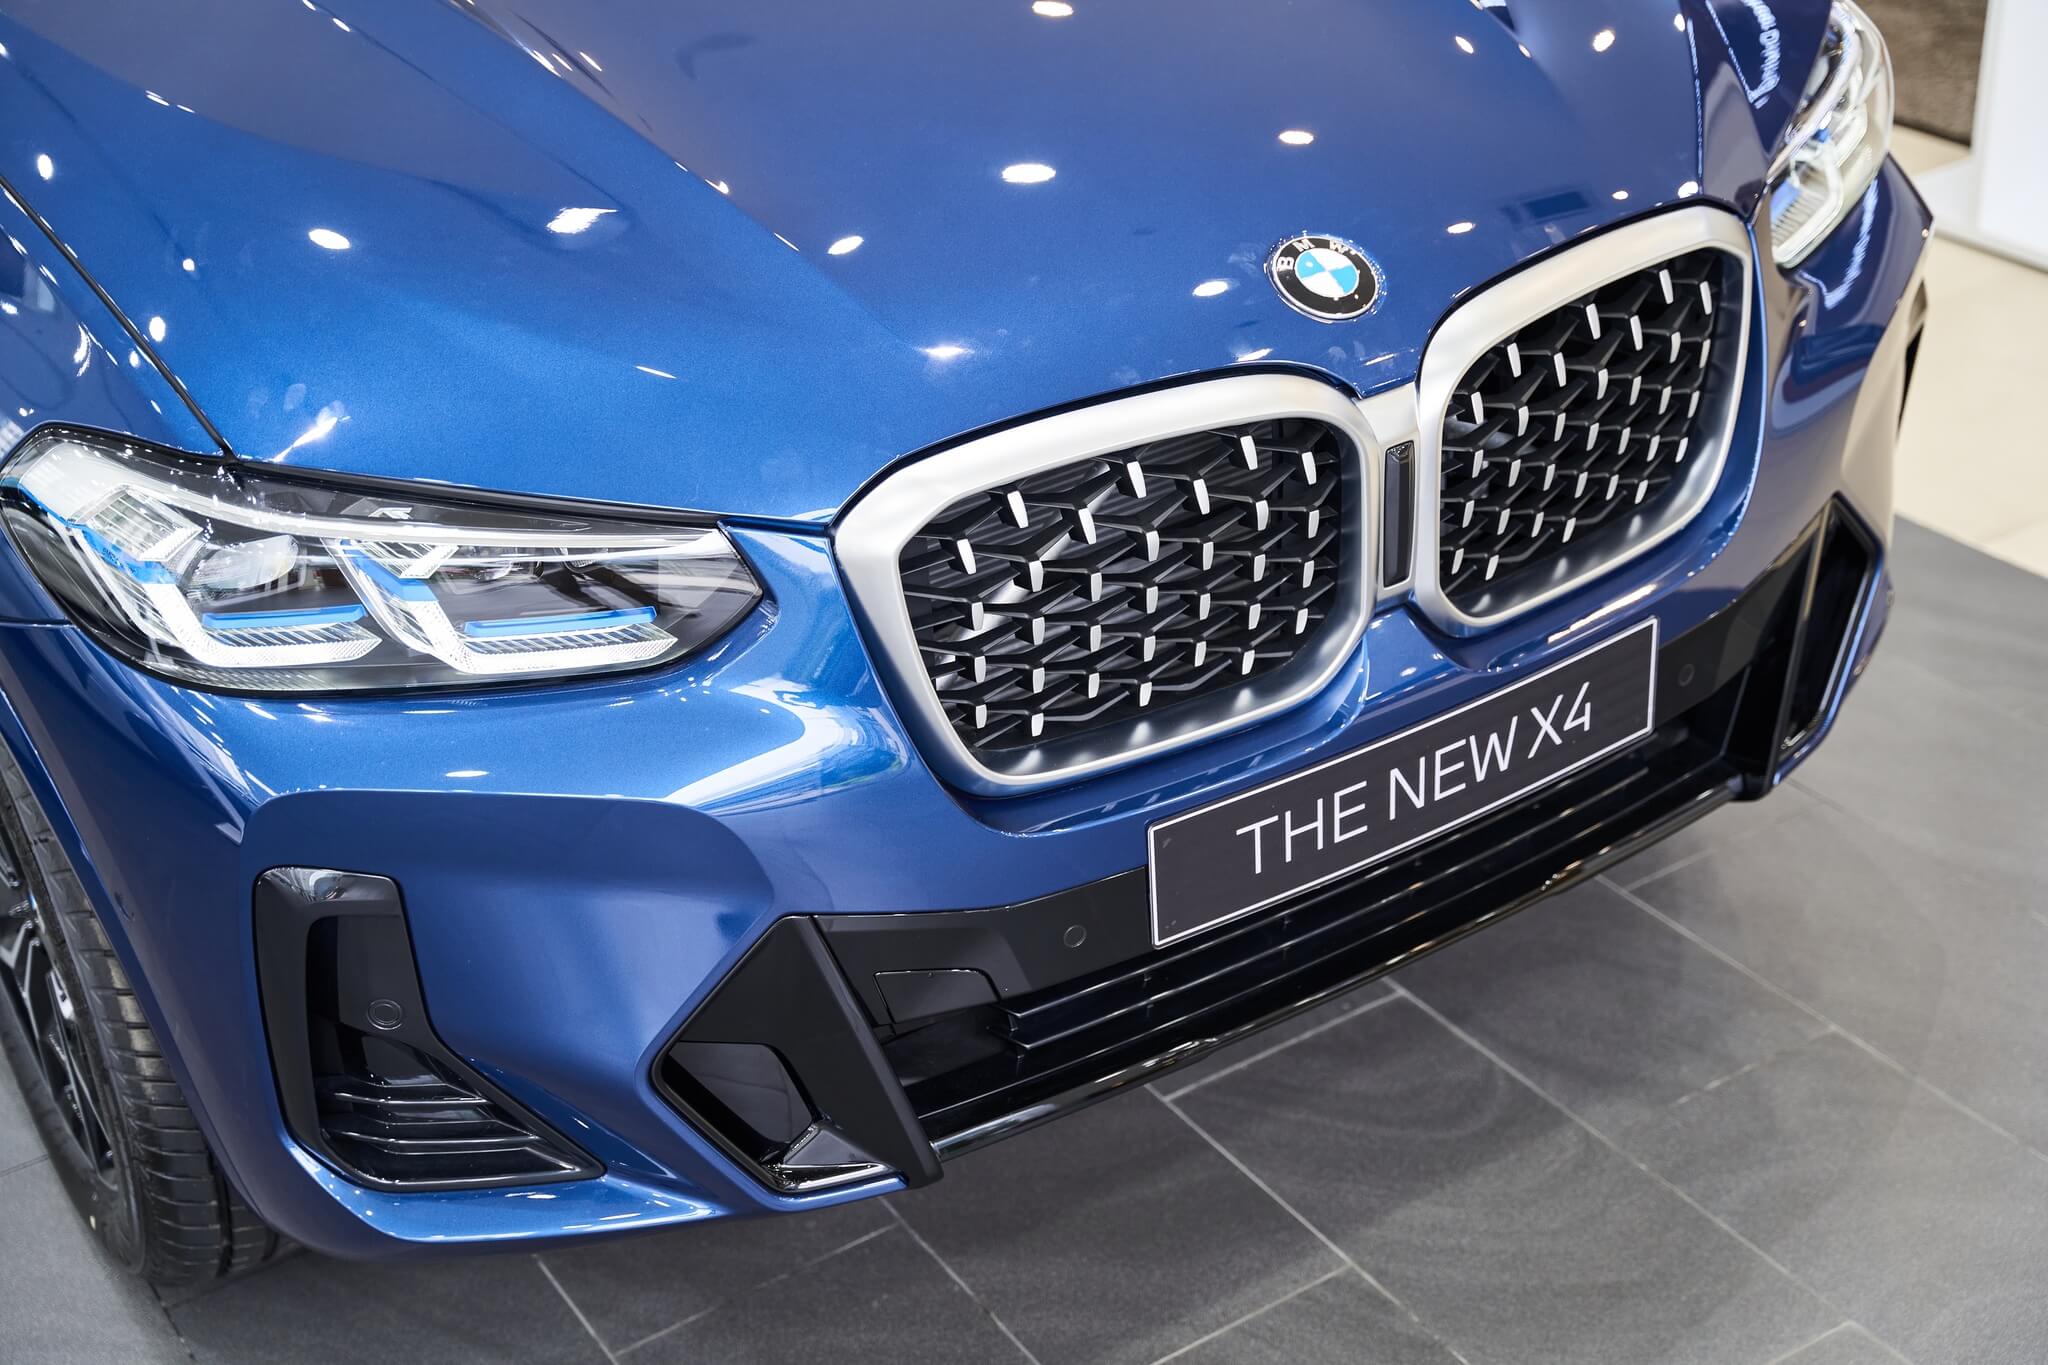 Tải ảnh BMW X4 đẹp miễn phí chất lượng cao 36